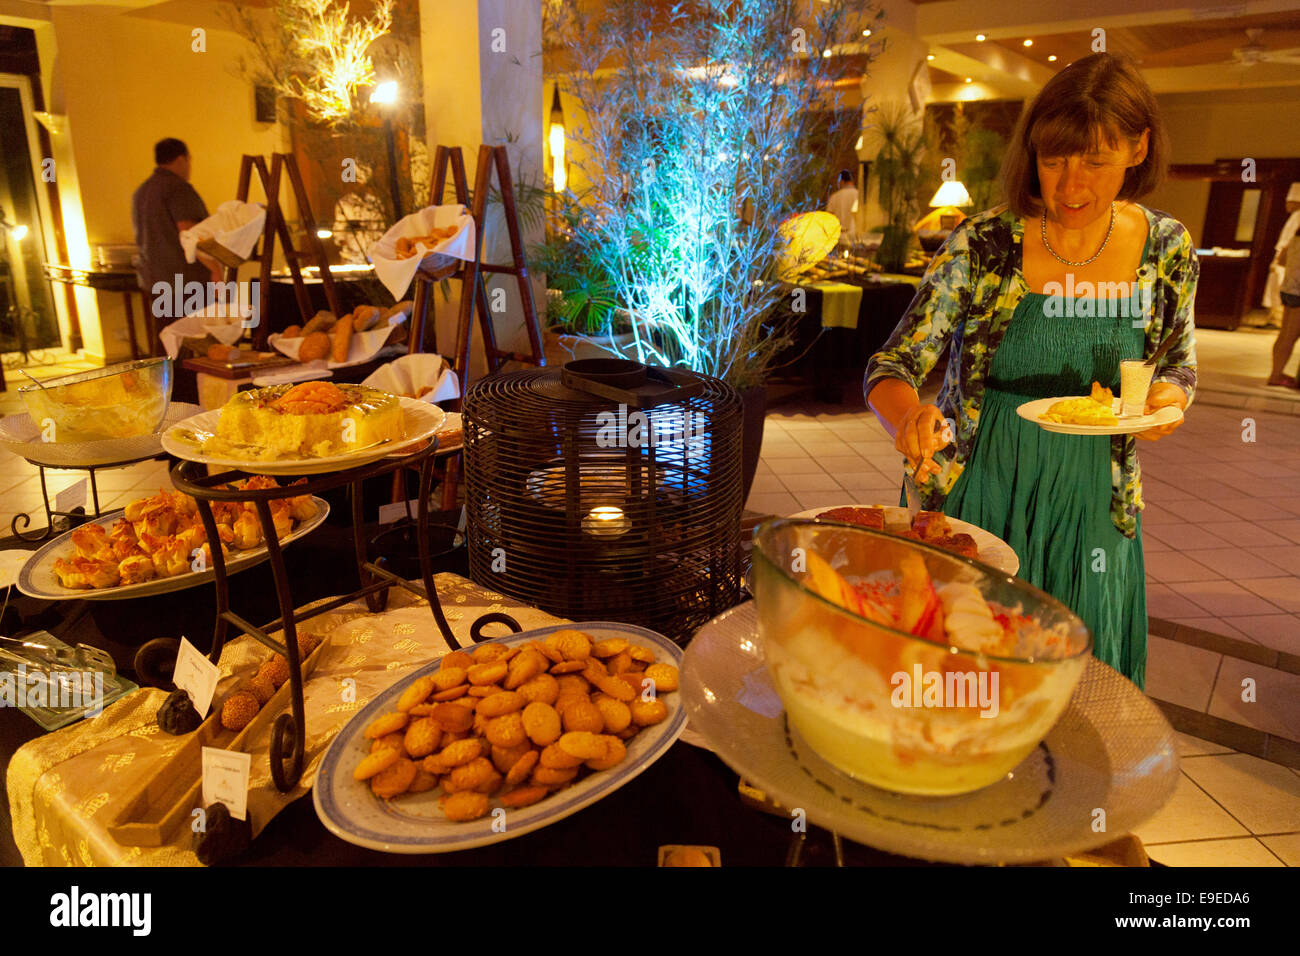 Un touriste d'aider elle-même à l'alimentation dans un buffet, l'hôtel résidence de luxe 5 étoiles, Belle Mare Ile Maurice Banque D'Images